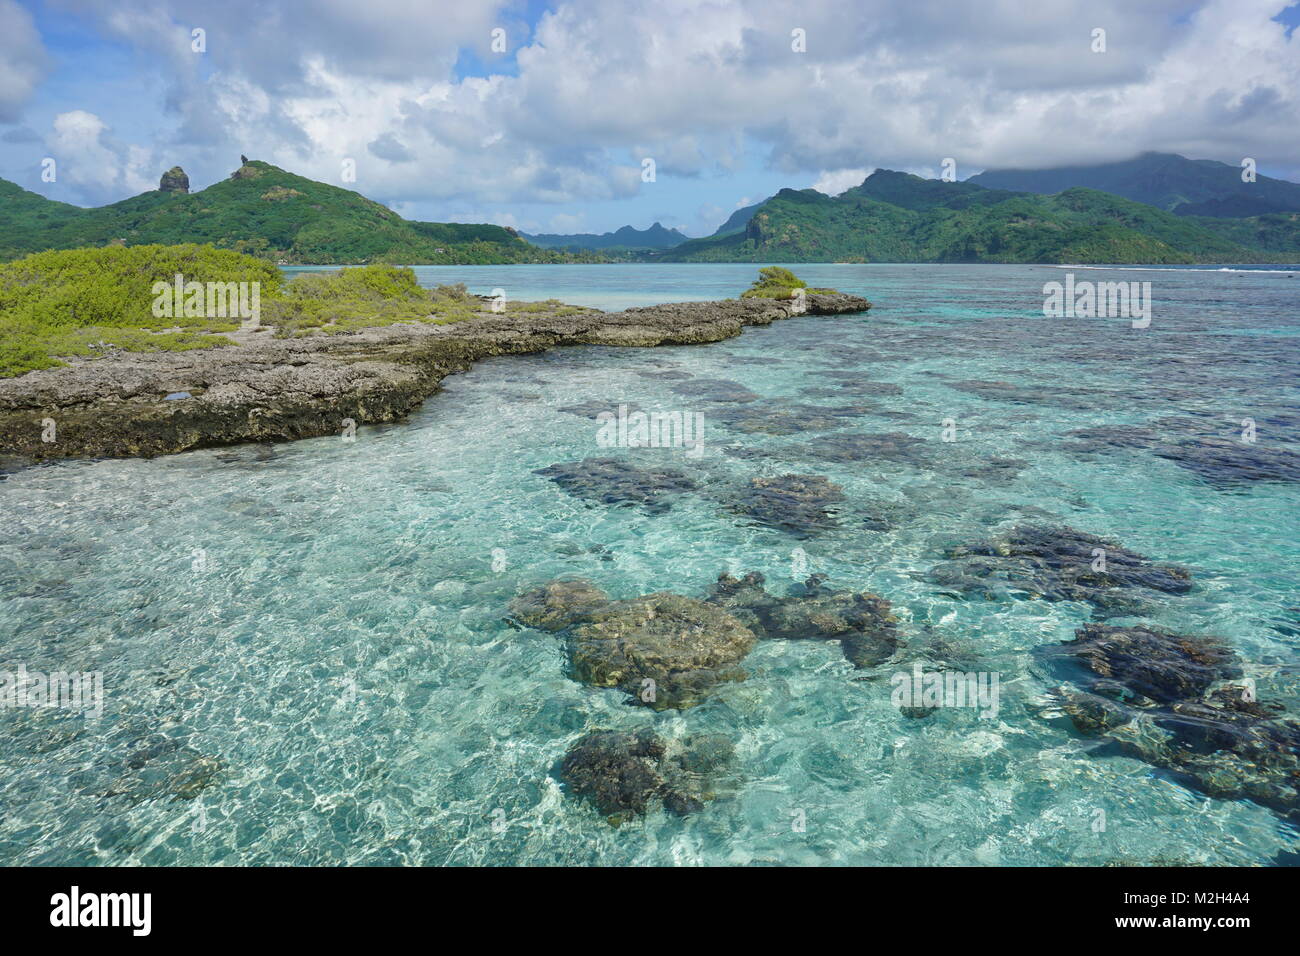 Le lagon avec un îlot rocheux de l'île de Huahine près de baie de Maroe, océan Pacifique, Polynésie Française Banque D'Images